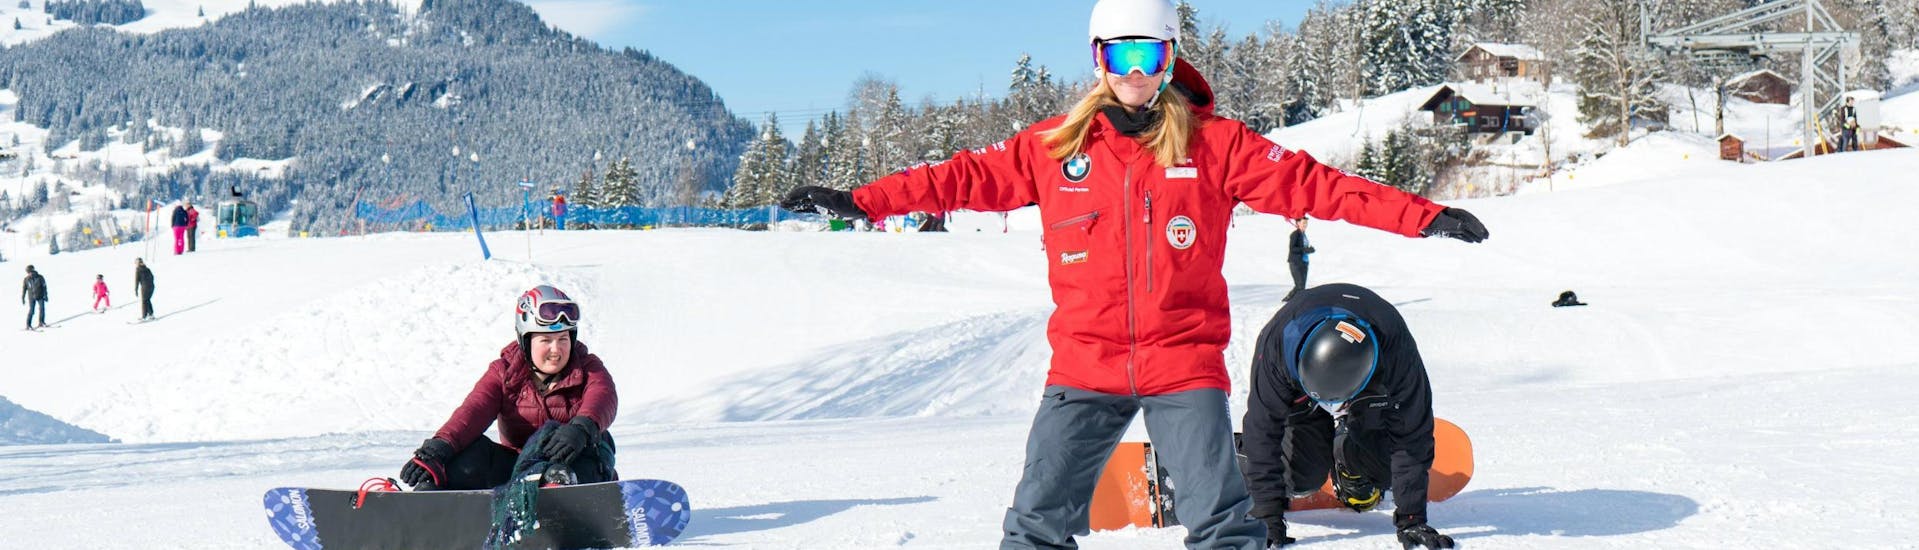 Eine Snowboardlehrerin der Schweizer Skischule Grindelwald macht ihren Schülern während dem Snowboardkurs für Kinder rund Erwachsene für fortgeschrittene Snowboarder Übungen vor.